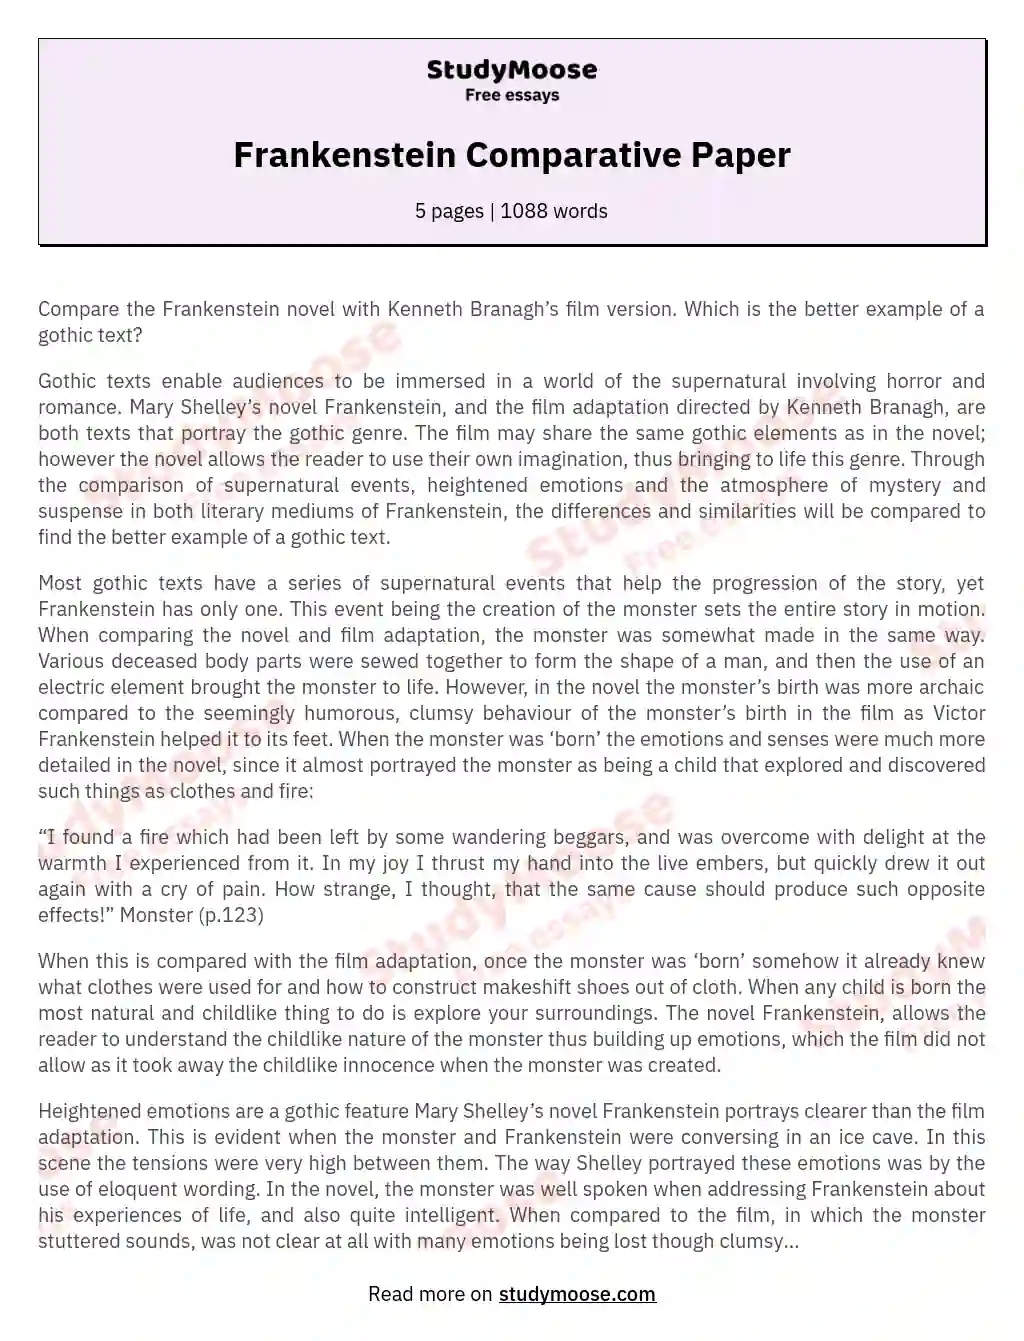 Frankenstein Comparative Paper essay